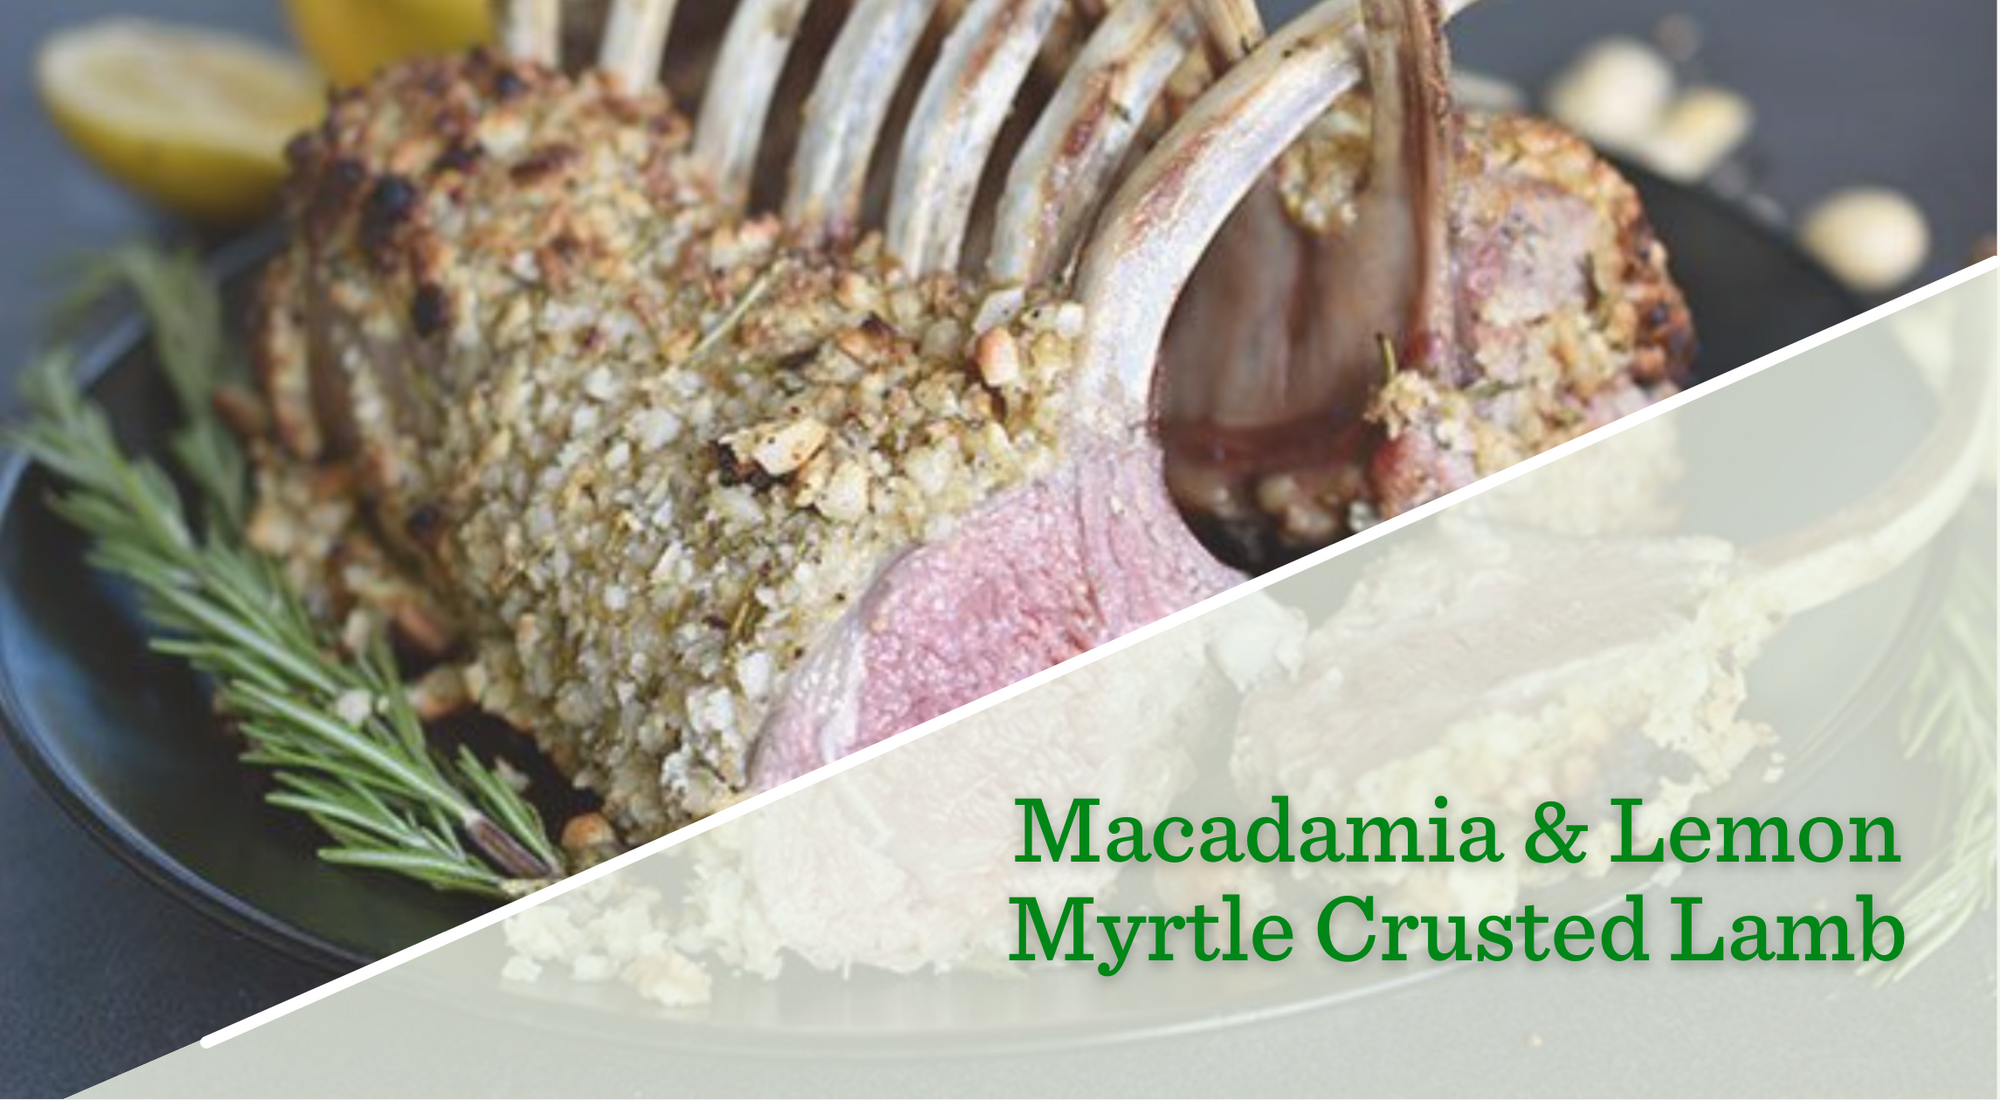 Macadamia and Lemon Myrtle Crusted Lamb